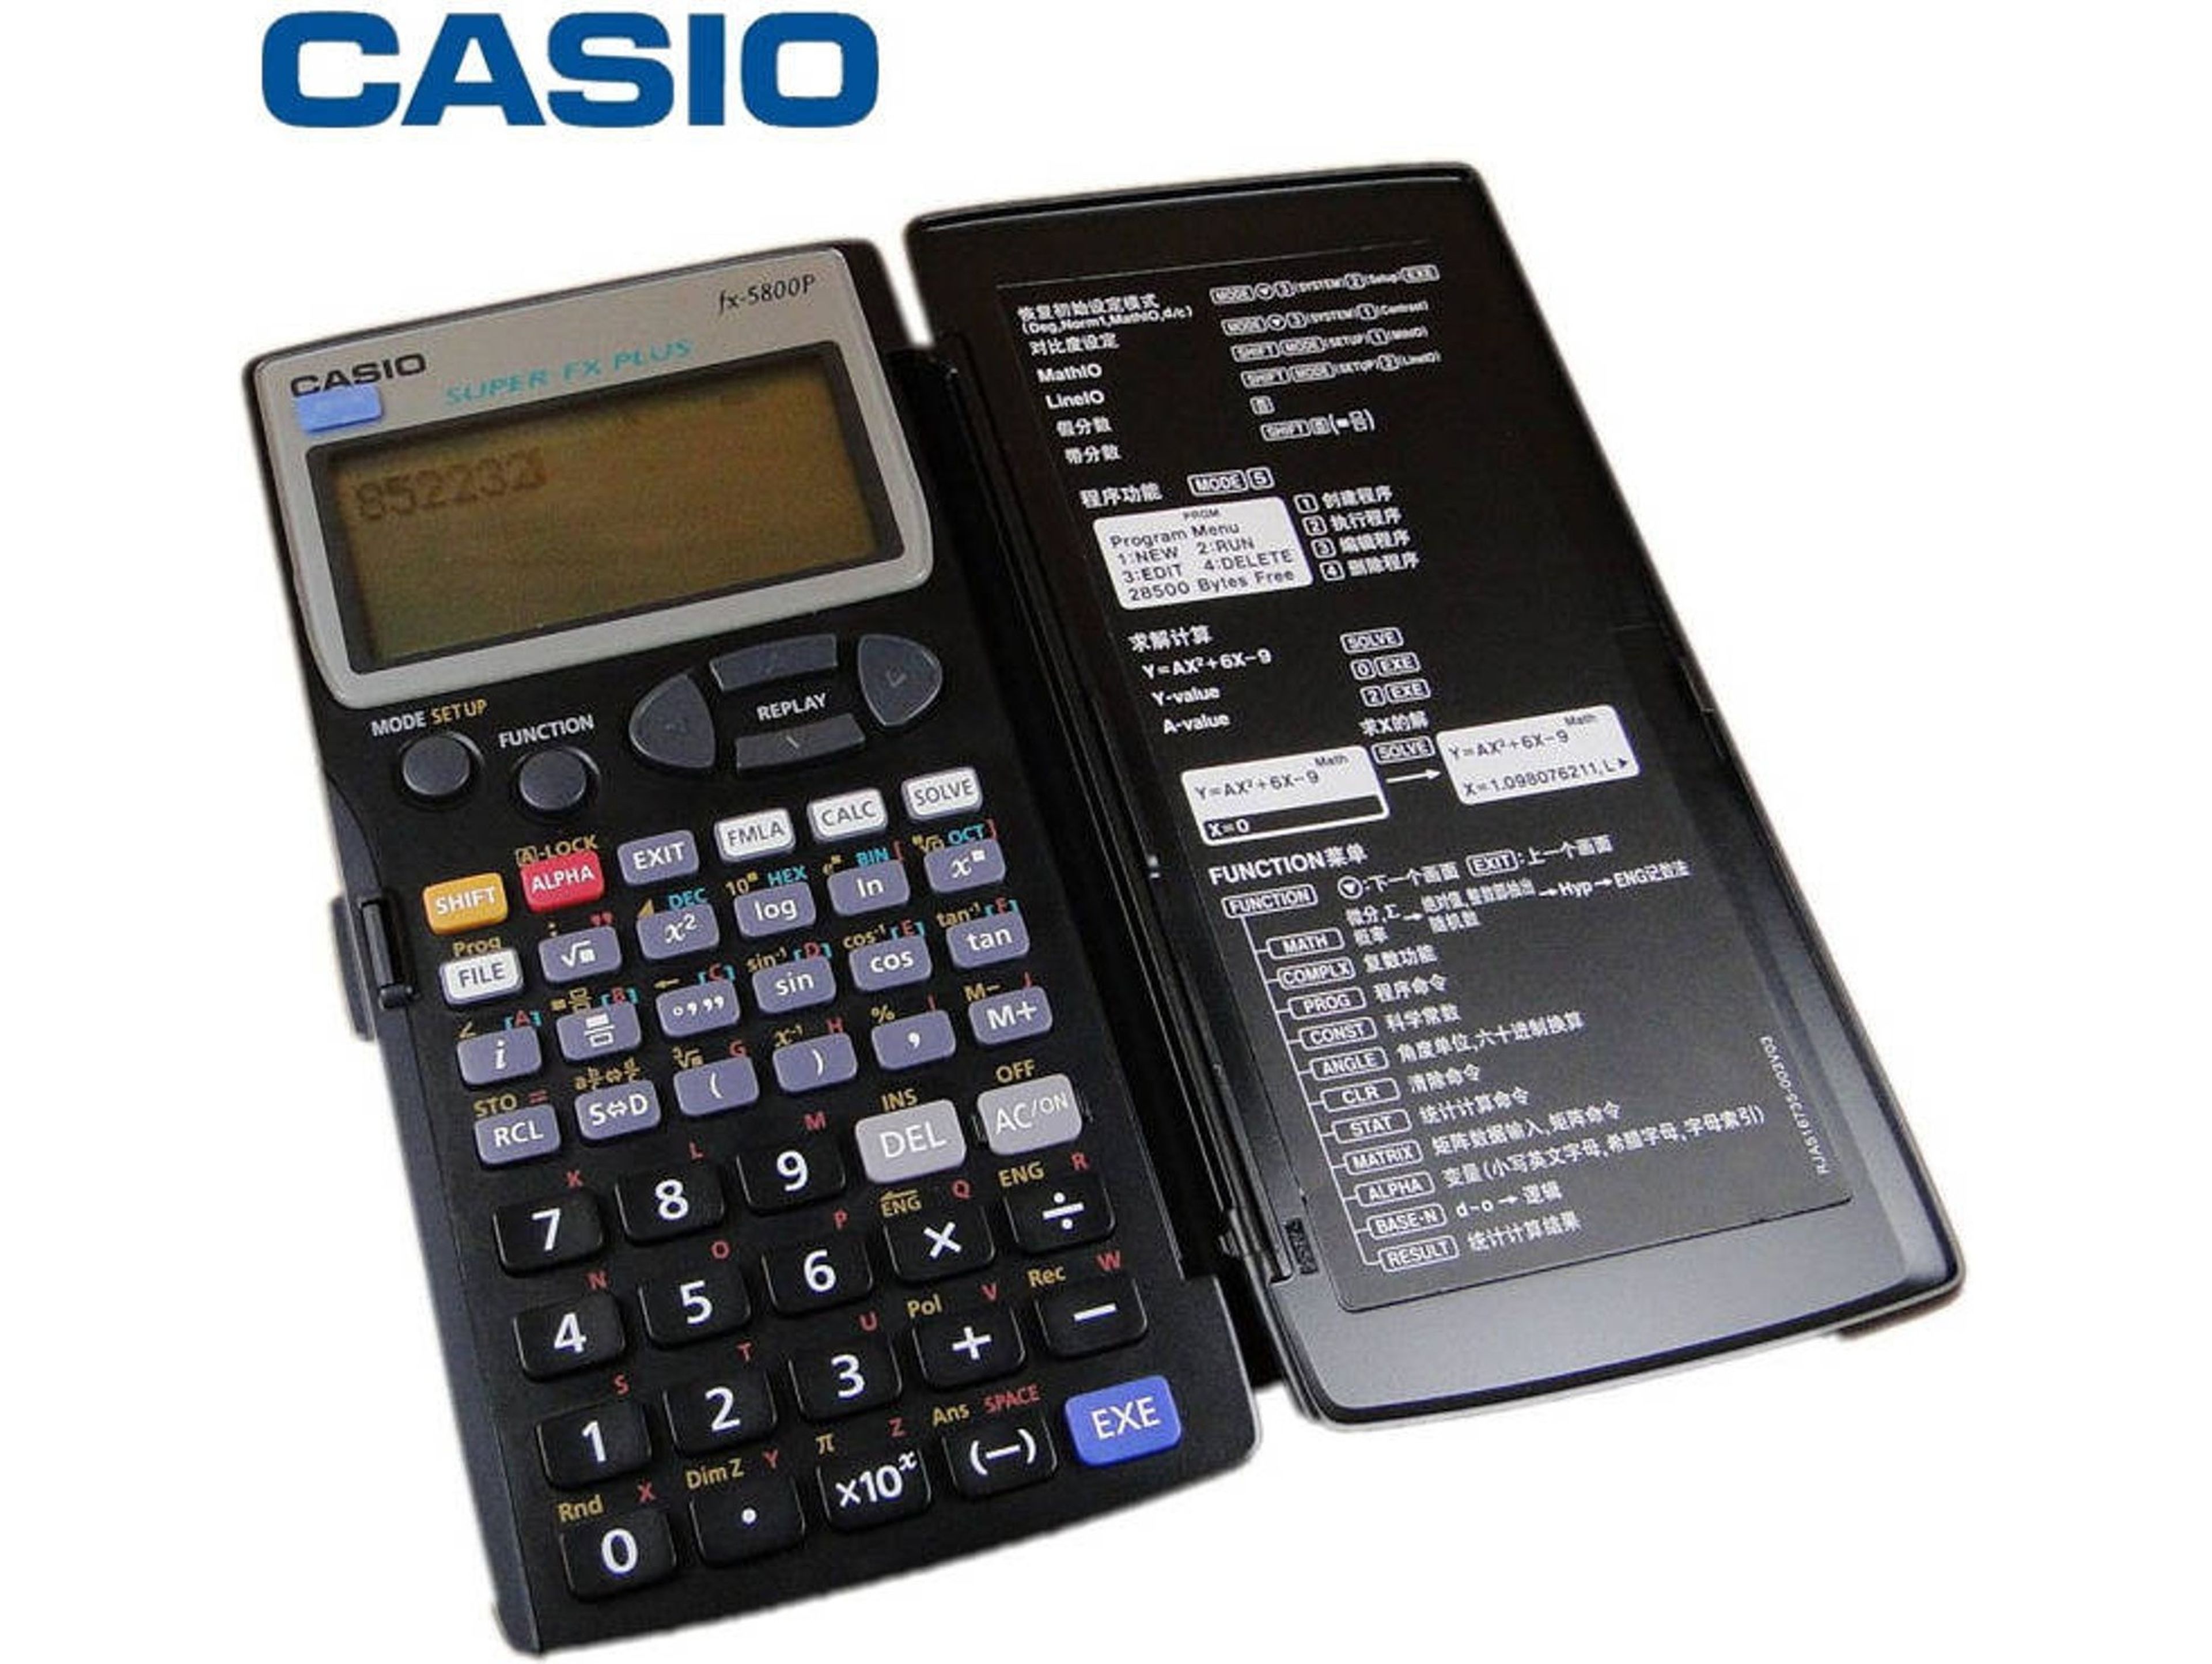 Casio fx-5800p calculadora